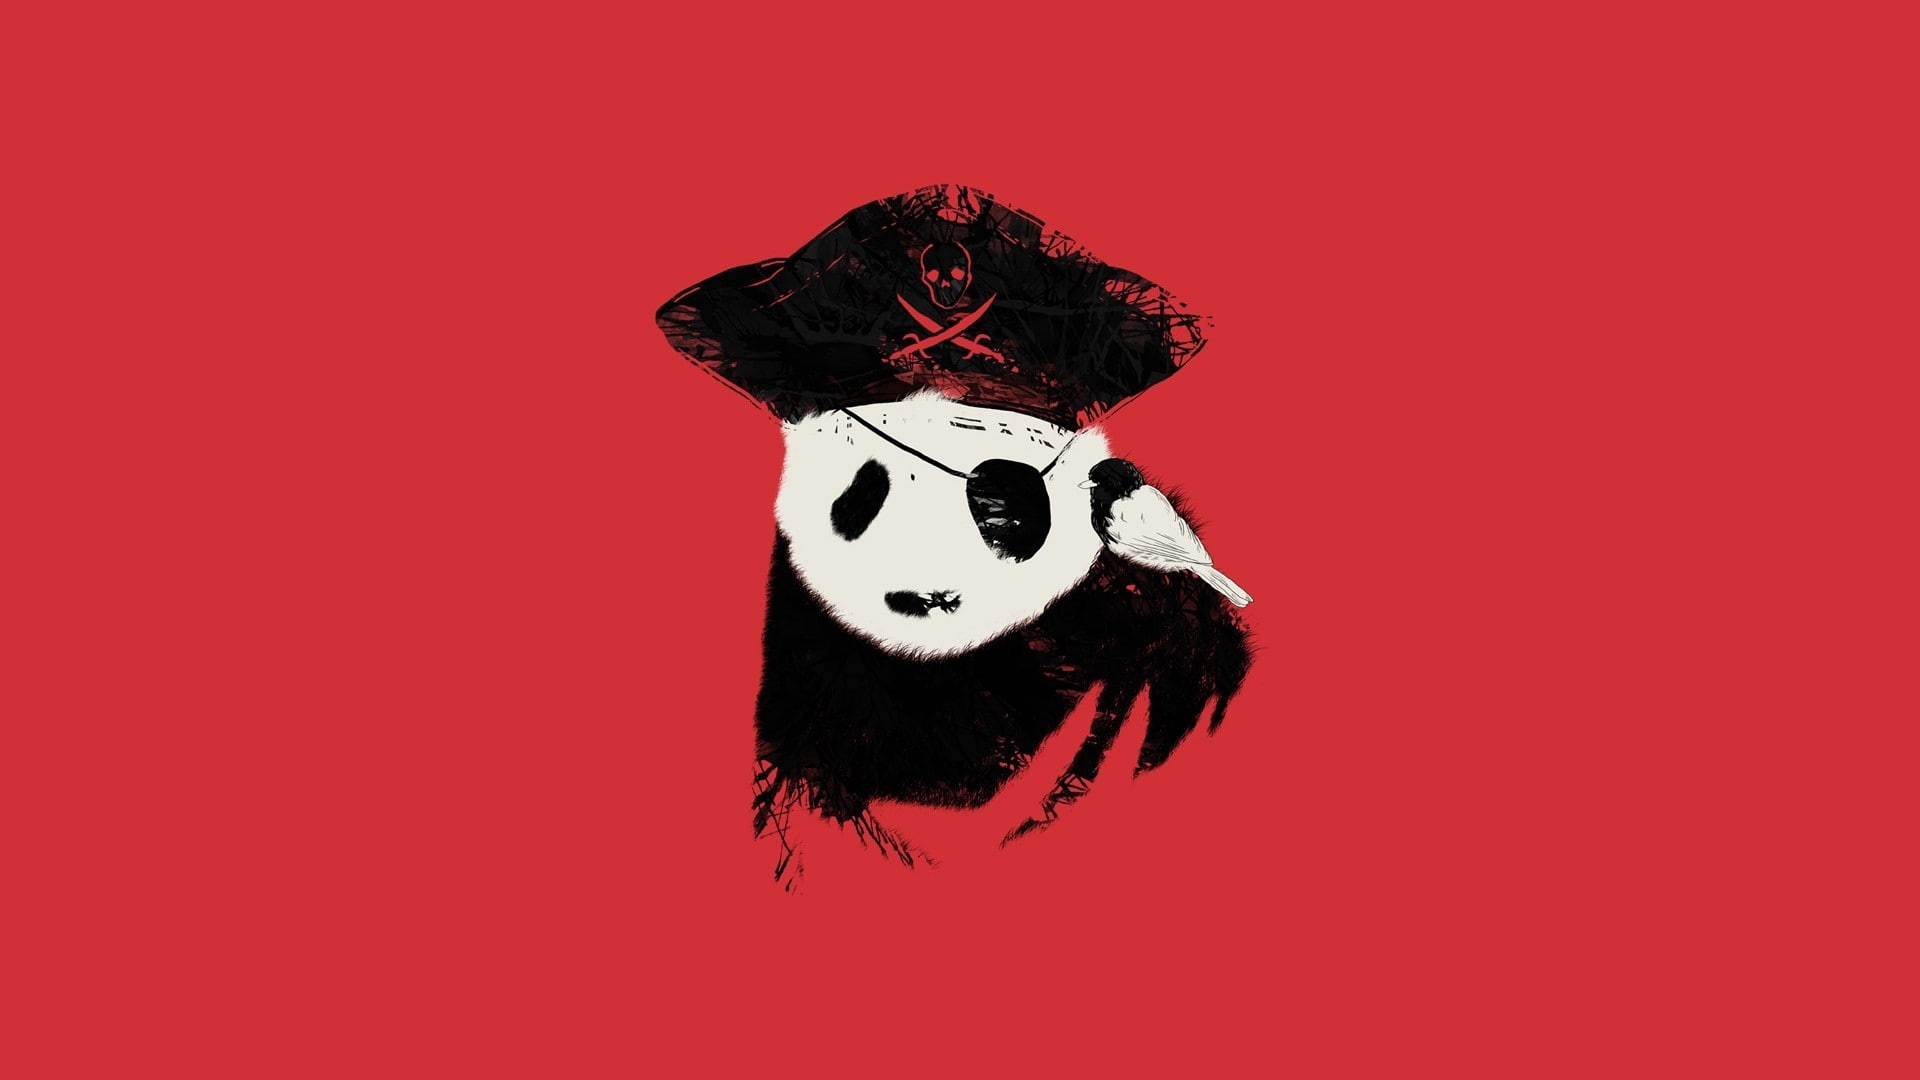 white, pirates, black, panda, artwork, red, red background